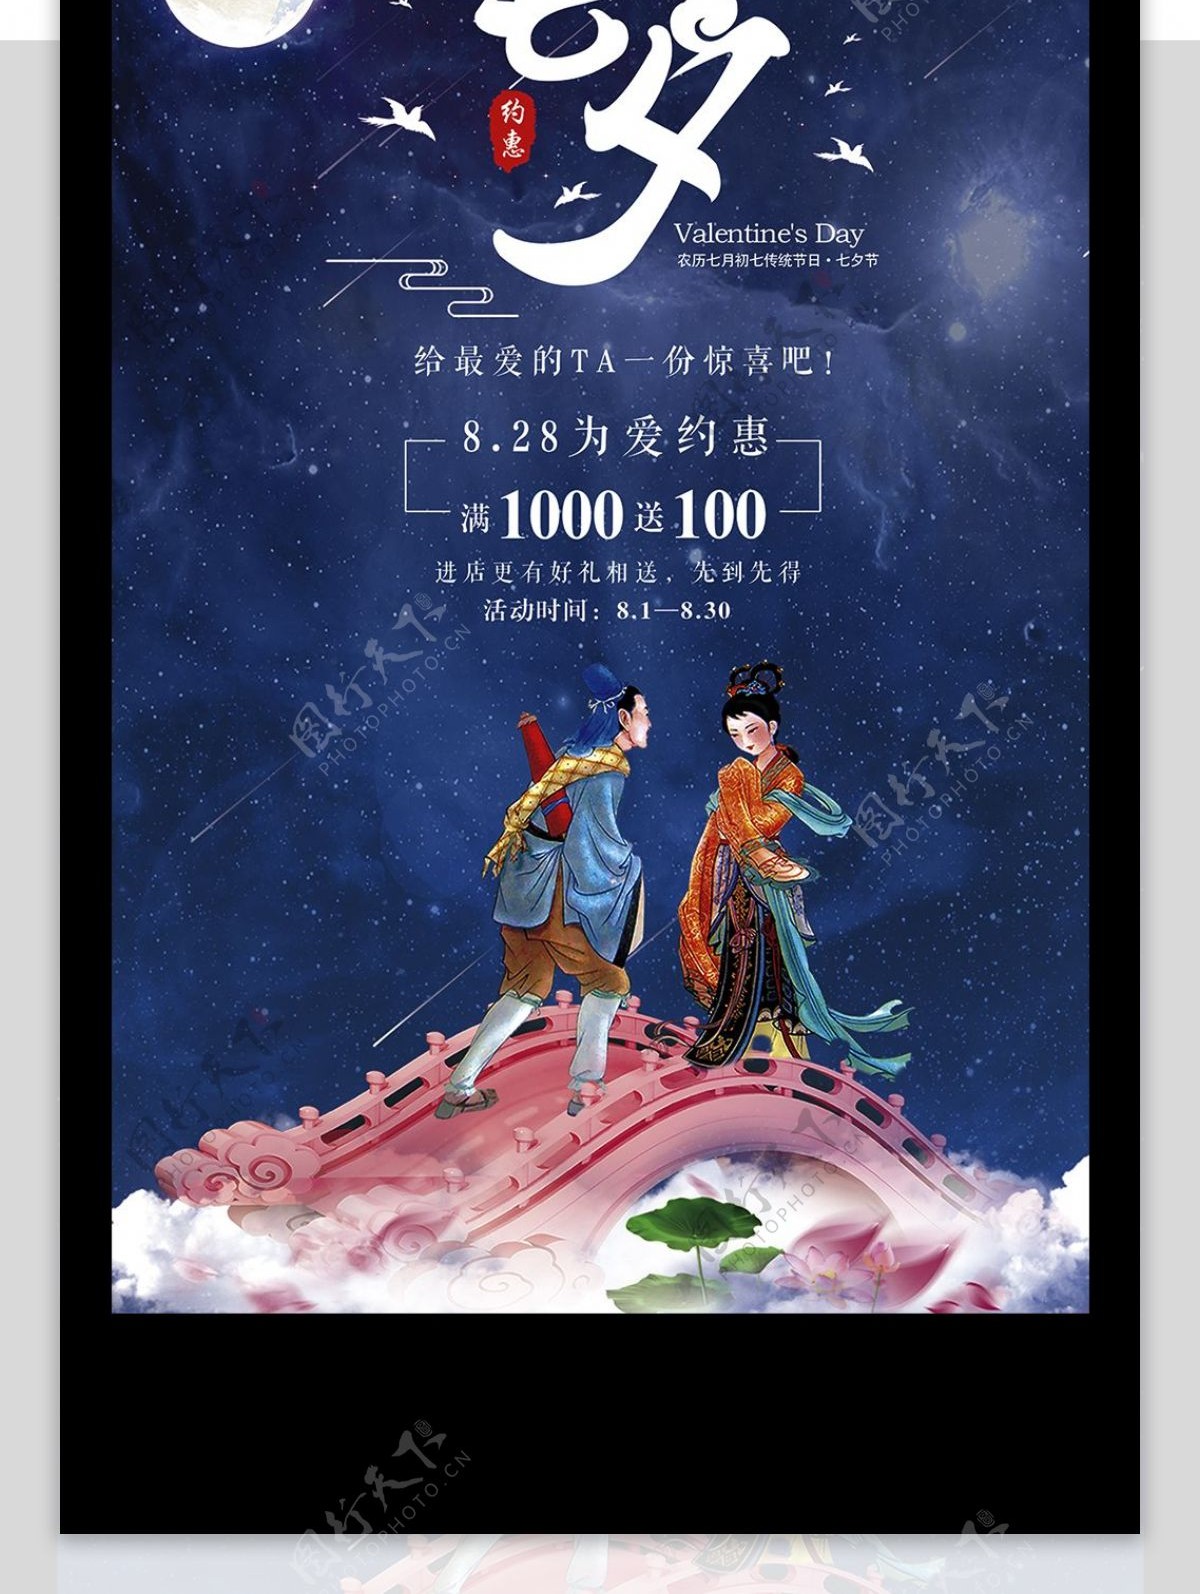 梦幻中国风唯美浪漫大气七夕情人节海报设计